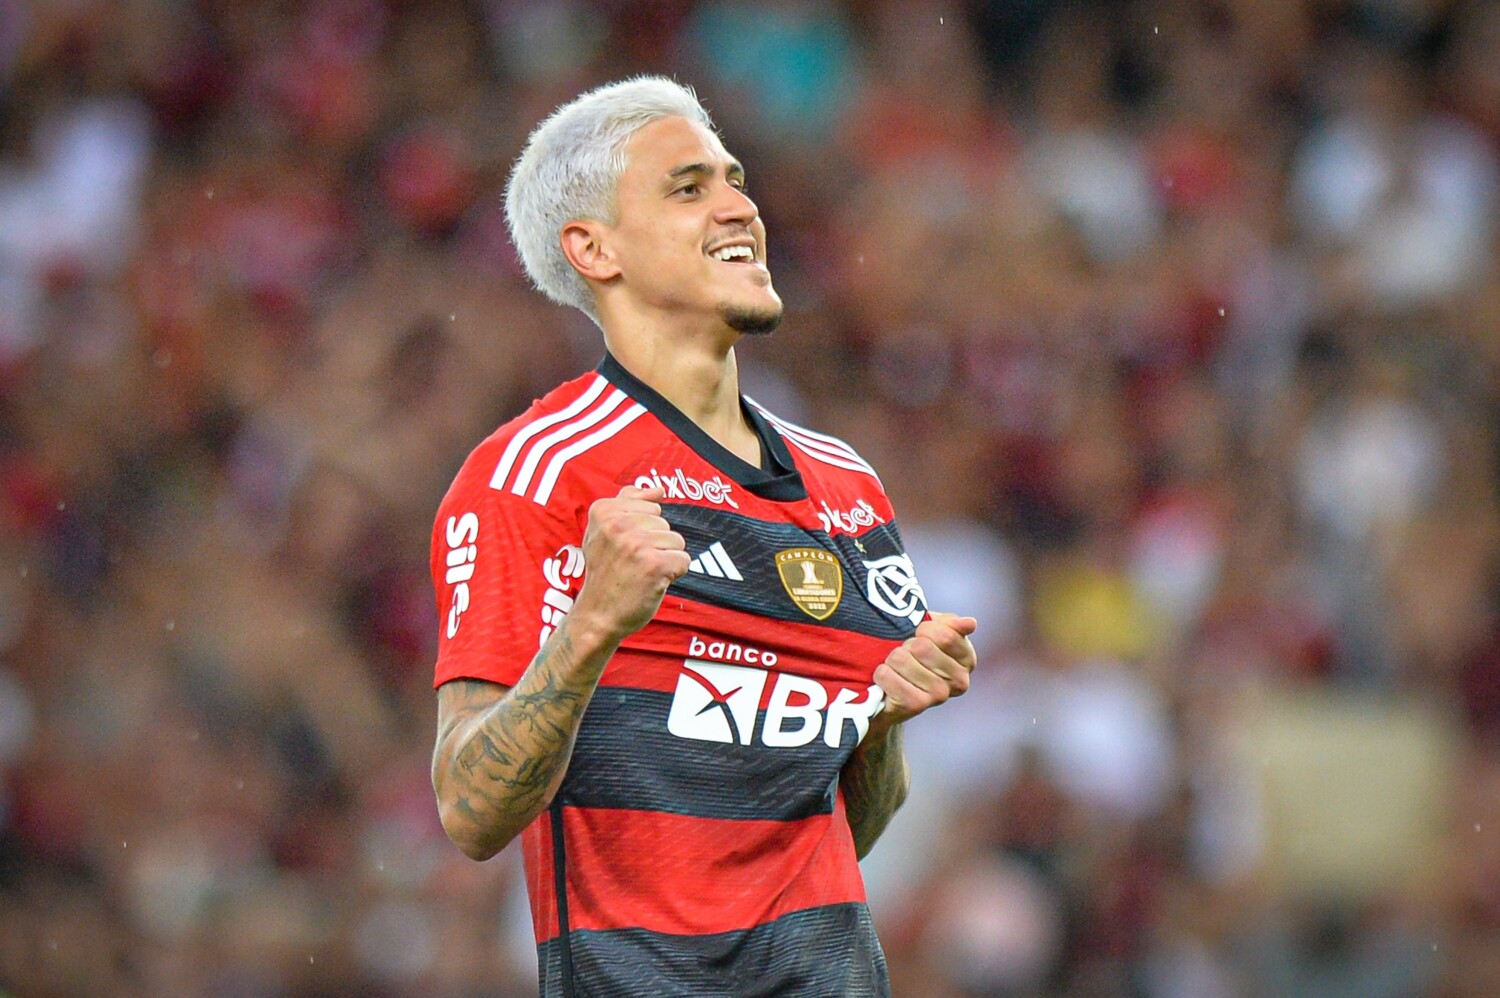 Flamengo encara Al-Hilal para avançar à Final do Mundial de Clubes